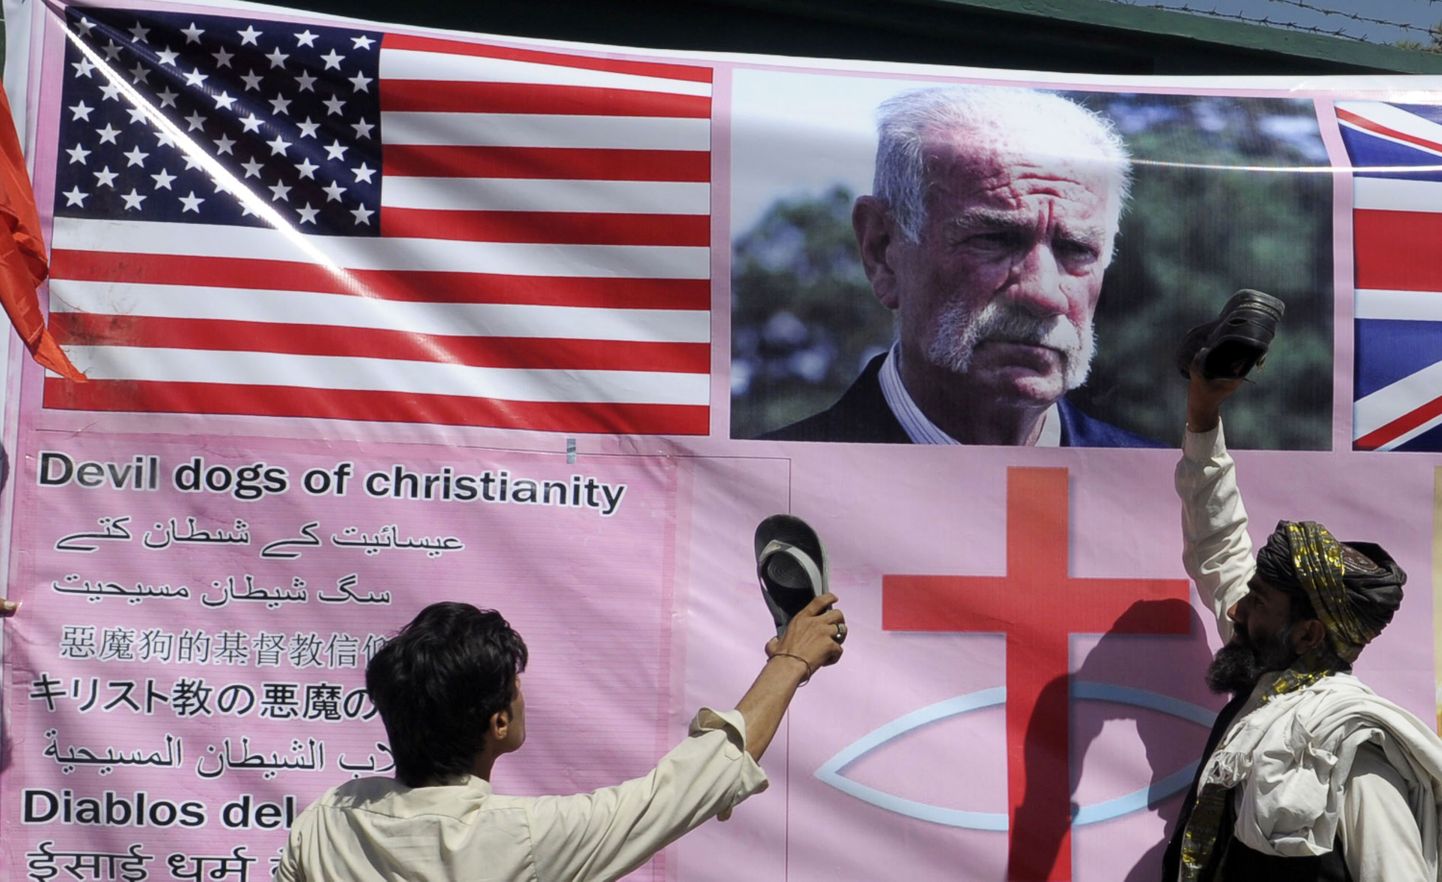 Vihased Pakistani moslemid Florida pastori Terry Jonesi pildiga plakati juures.